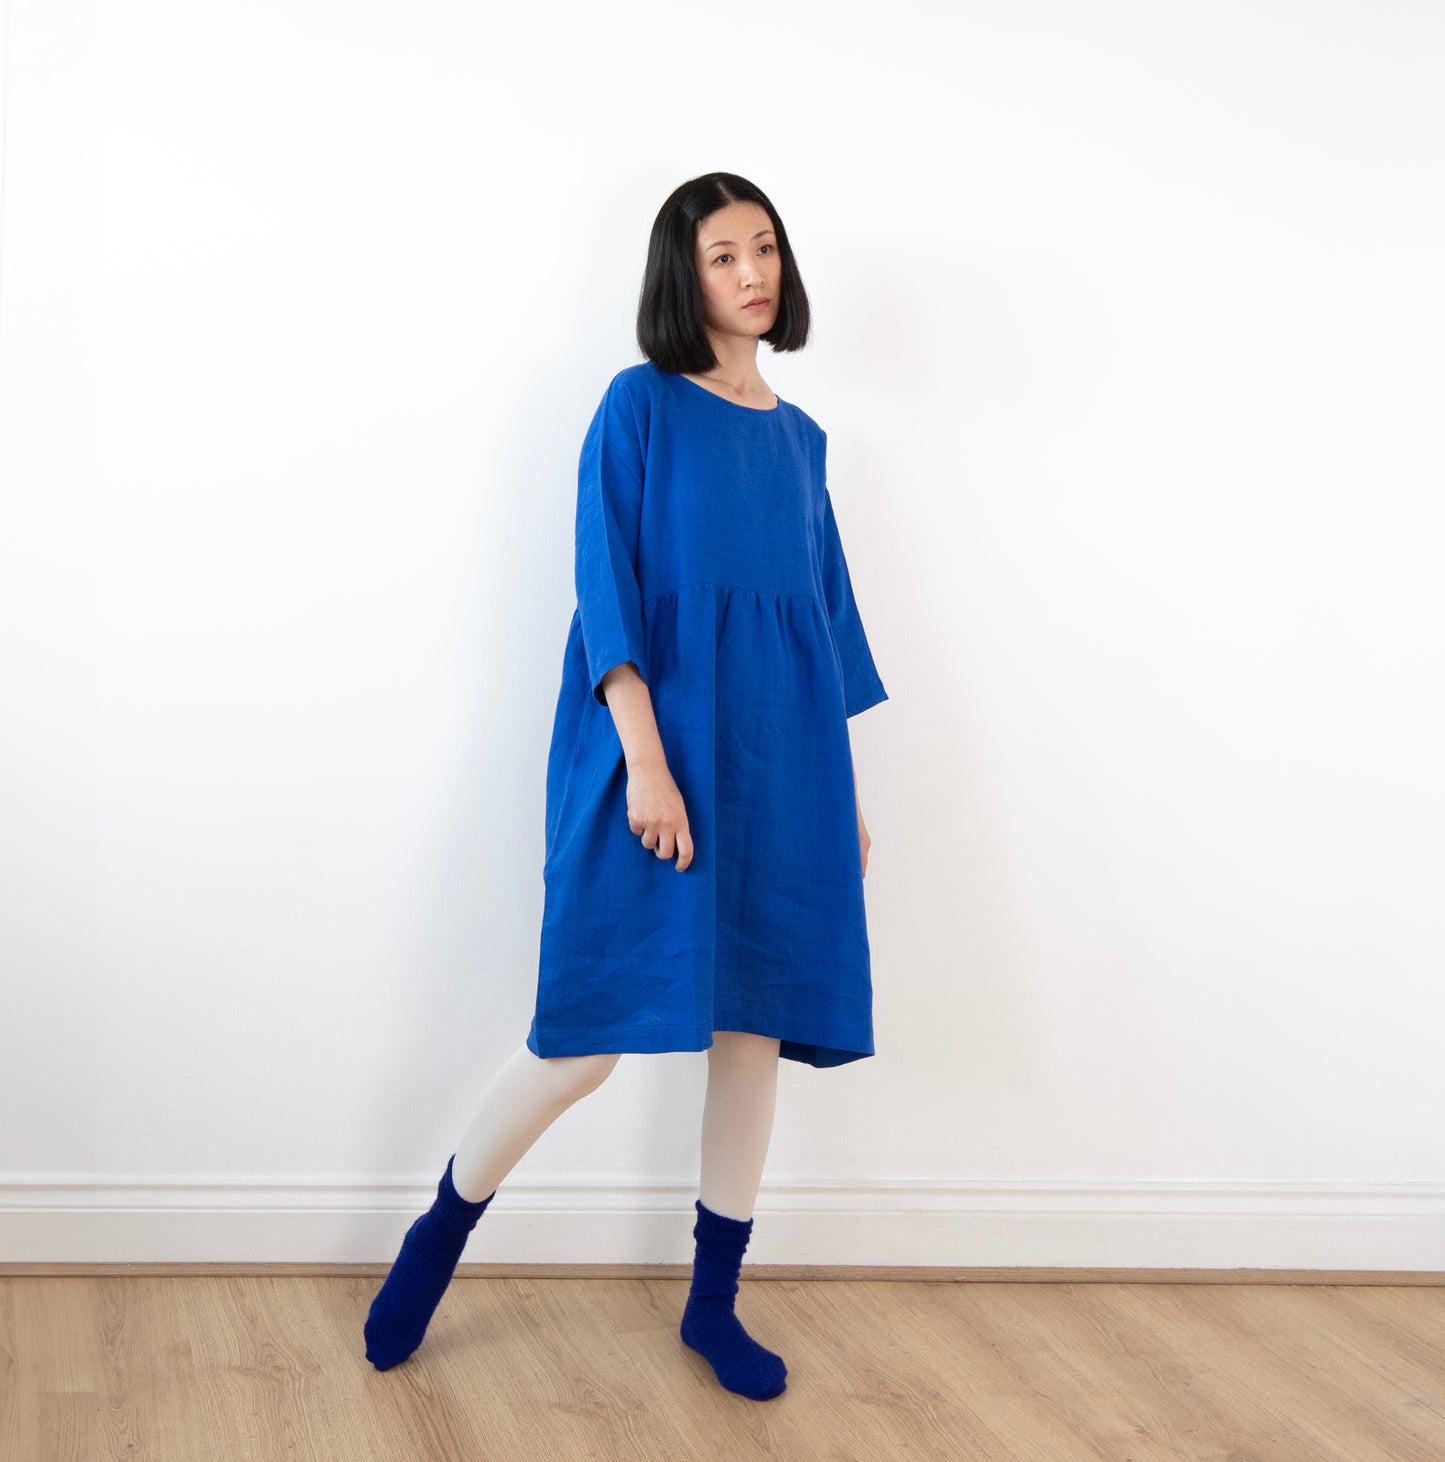 French blue linen dress (knee length)